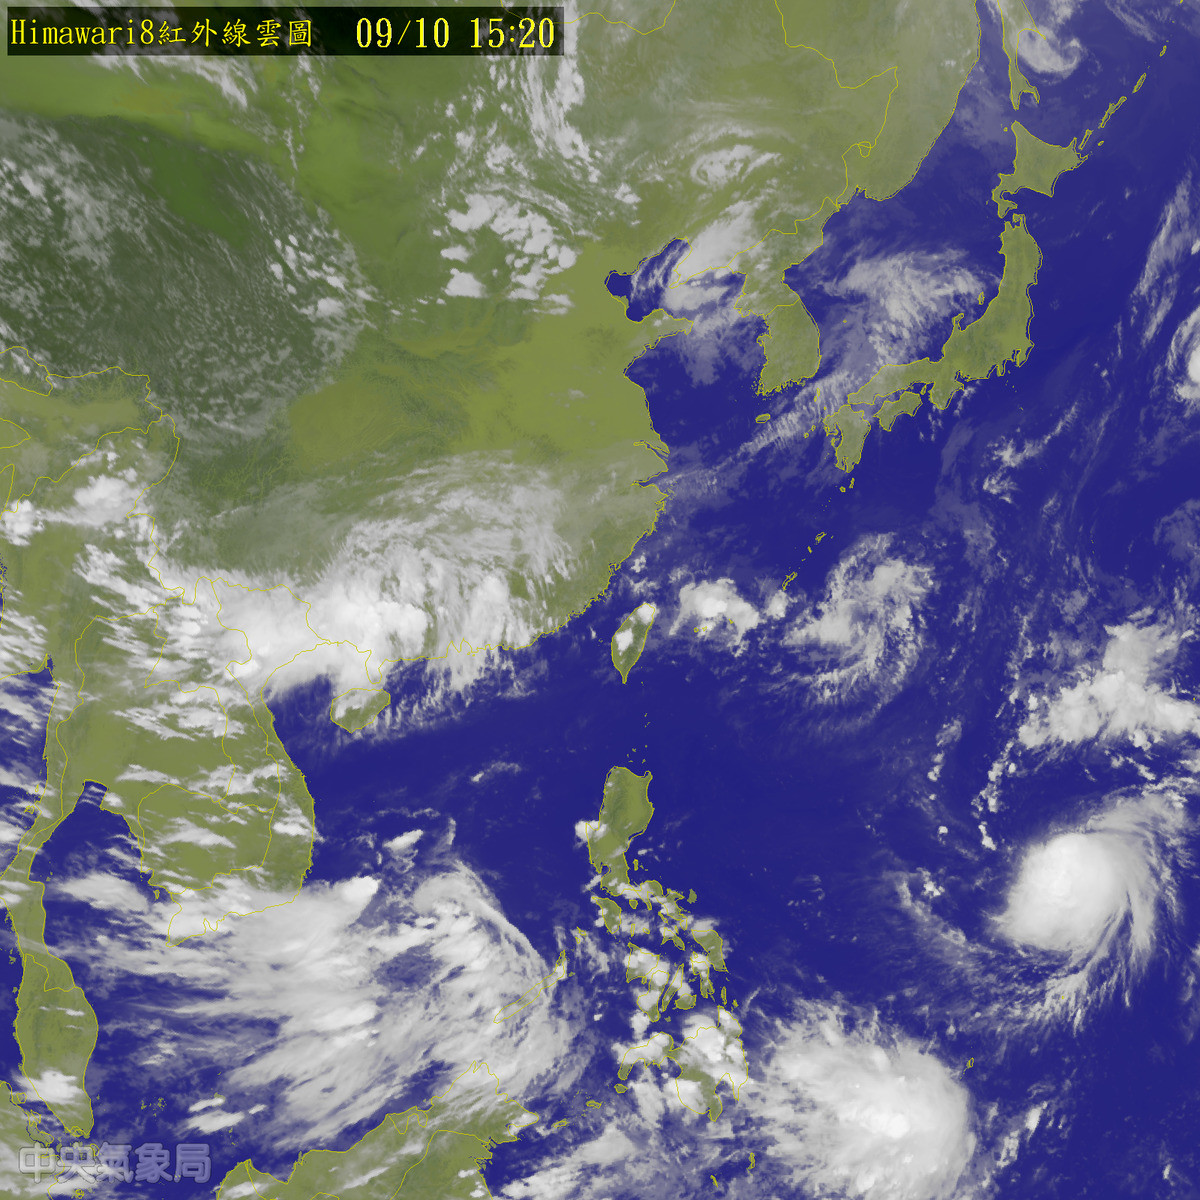 第14号台风「莫兰蒂」下午生成 中秋节影响北